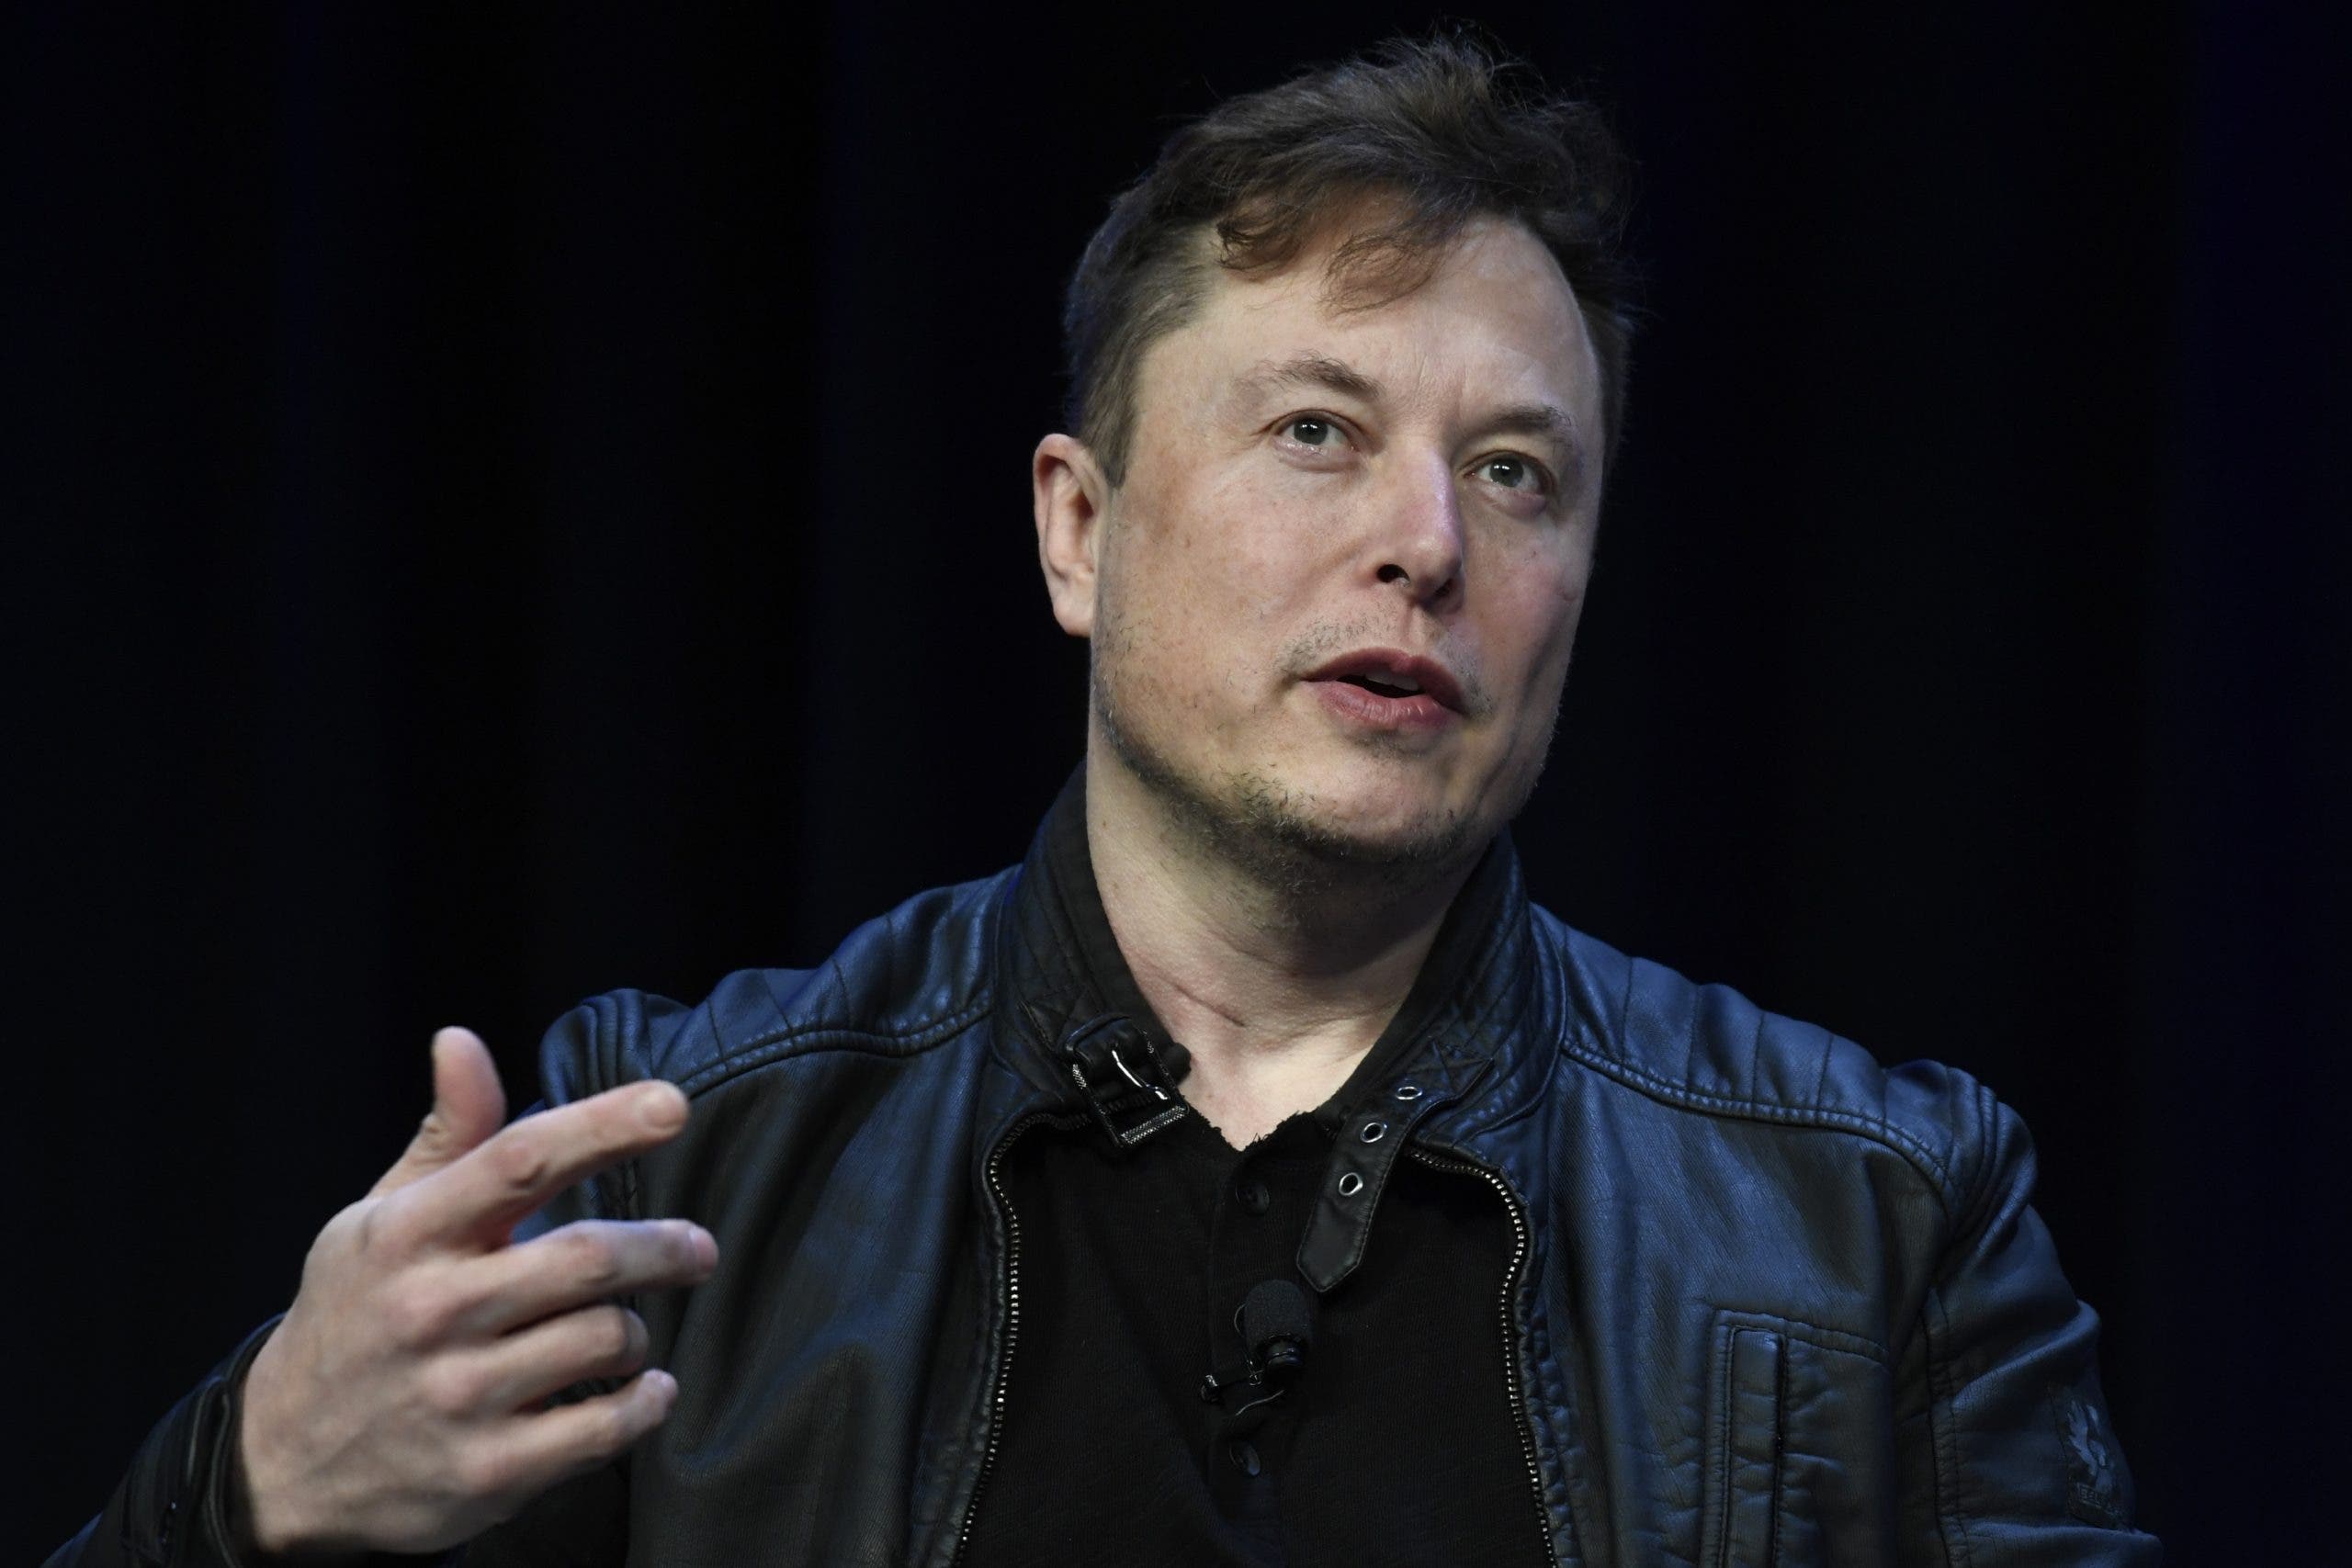 Aplazan el interrogatorio a Elon Musk en preparación de juicio contra Twitter